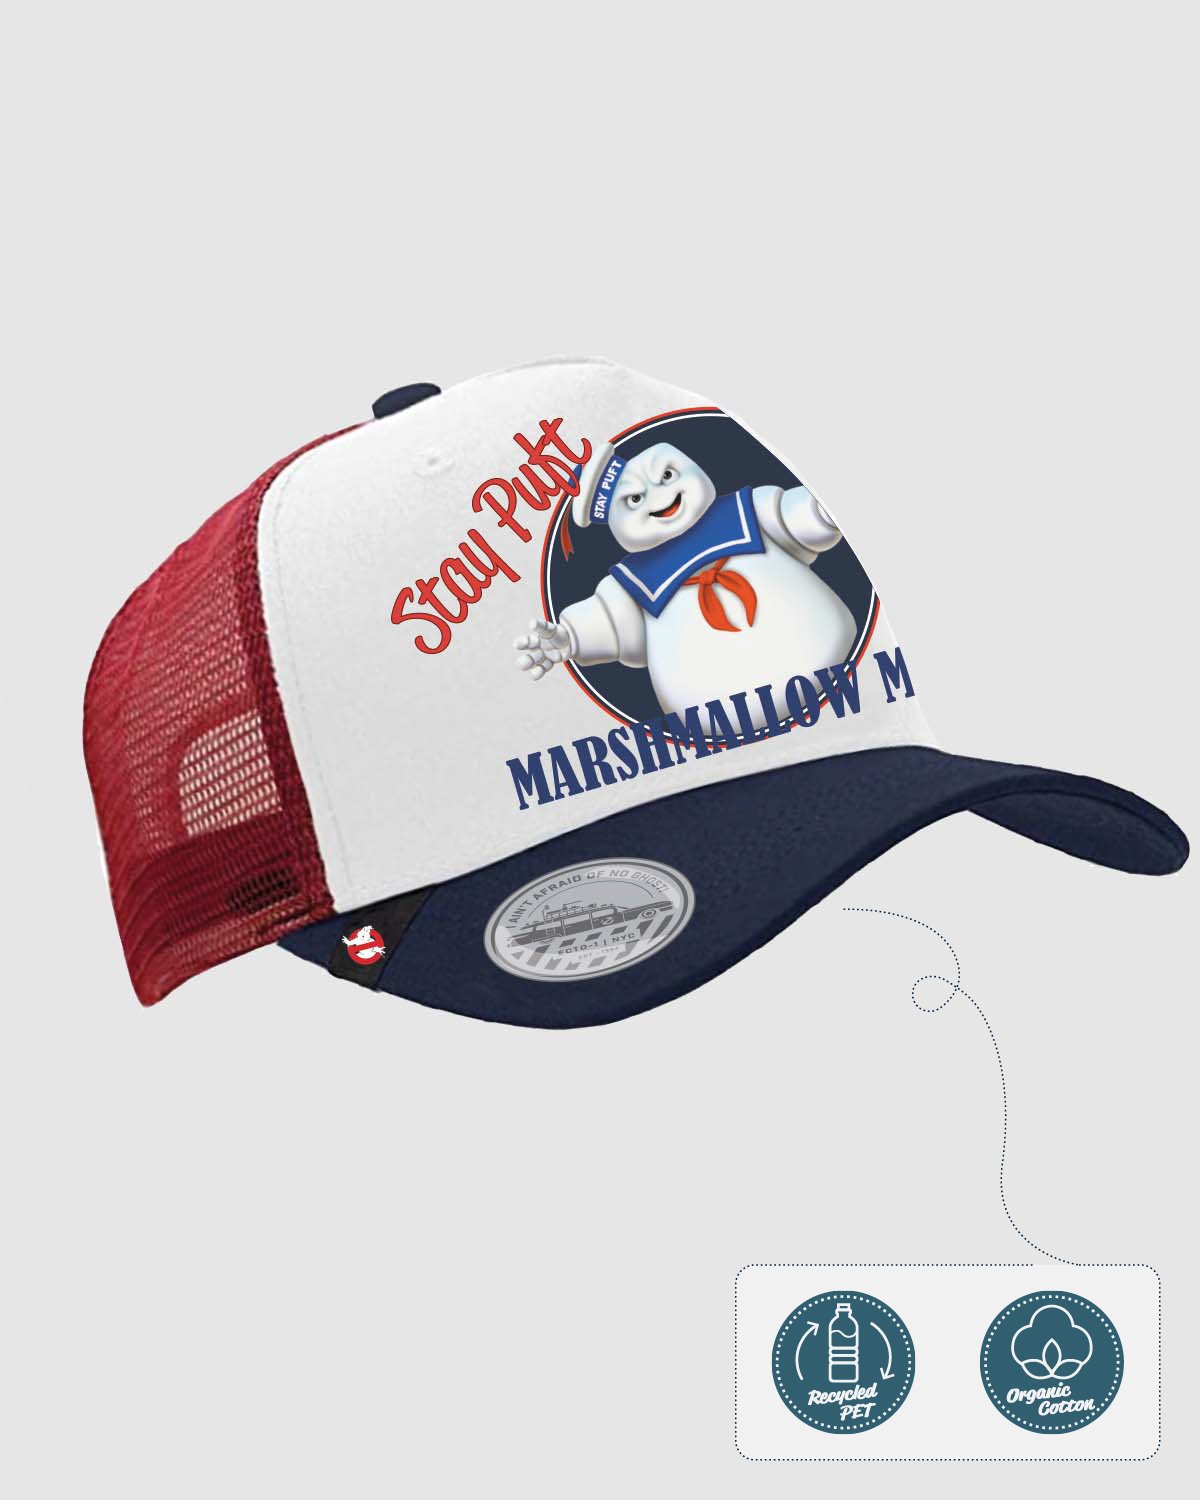 Ghostbusters Trucker Cap "Marshmallow Man" - Fan-shop